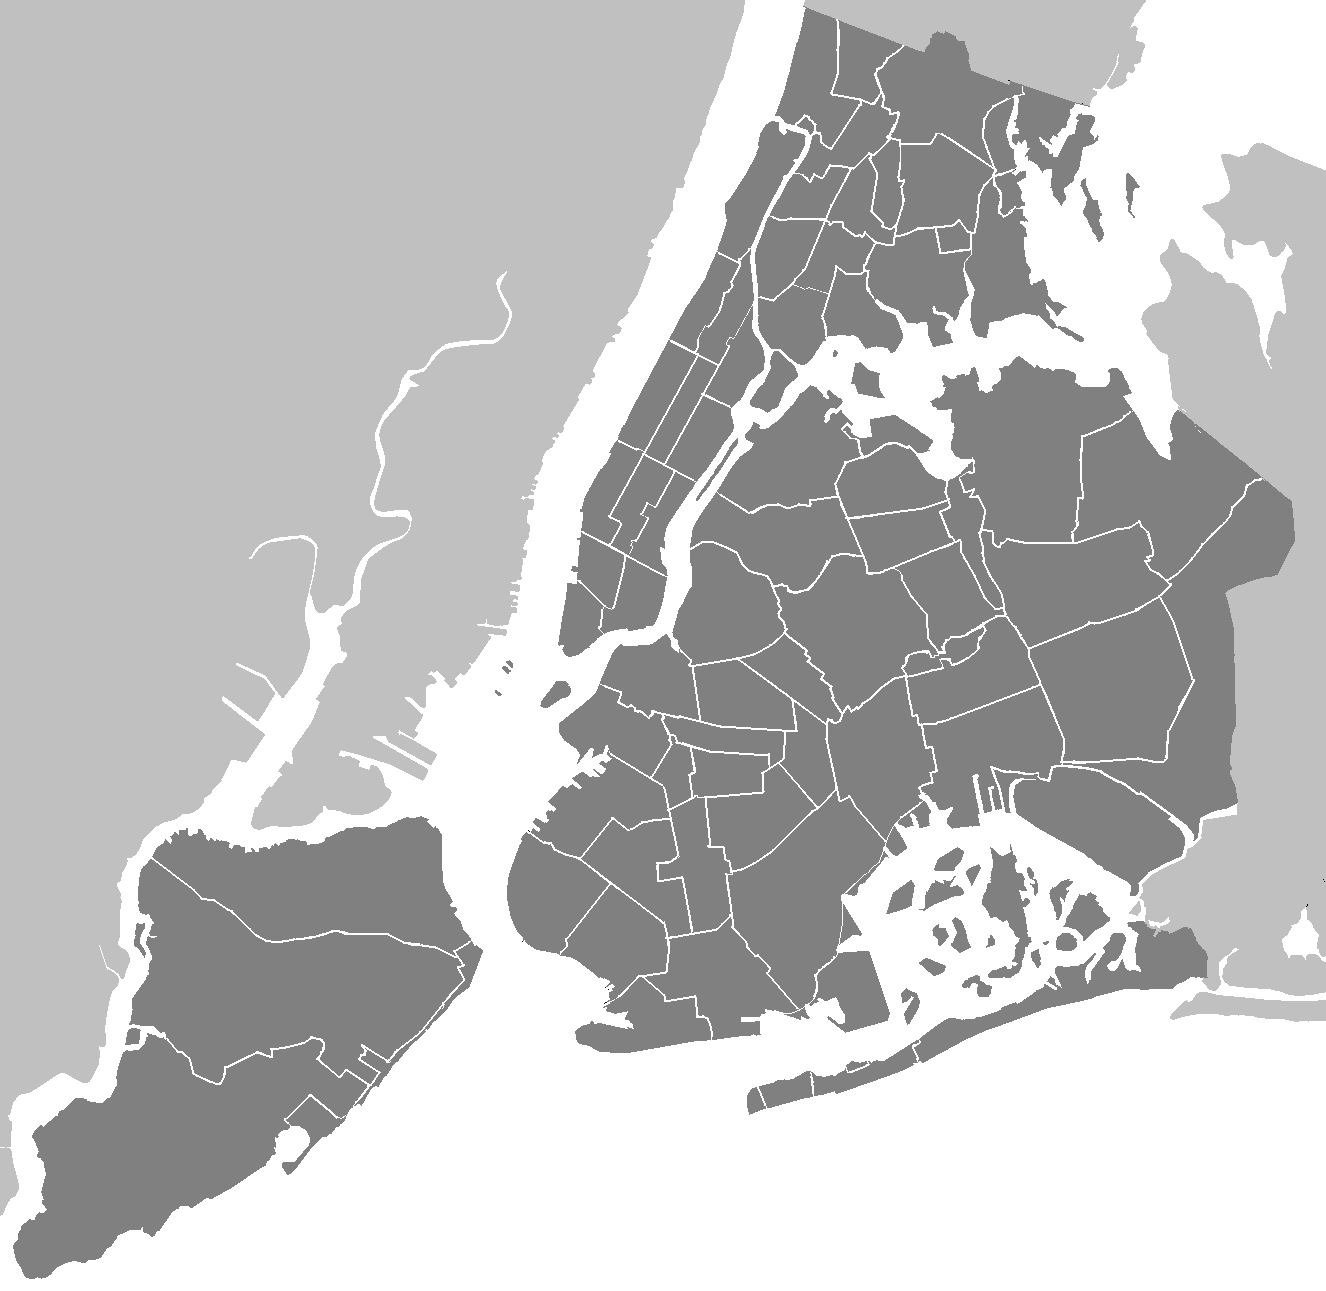 File:Neighbourhoods New York City Map.PNG